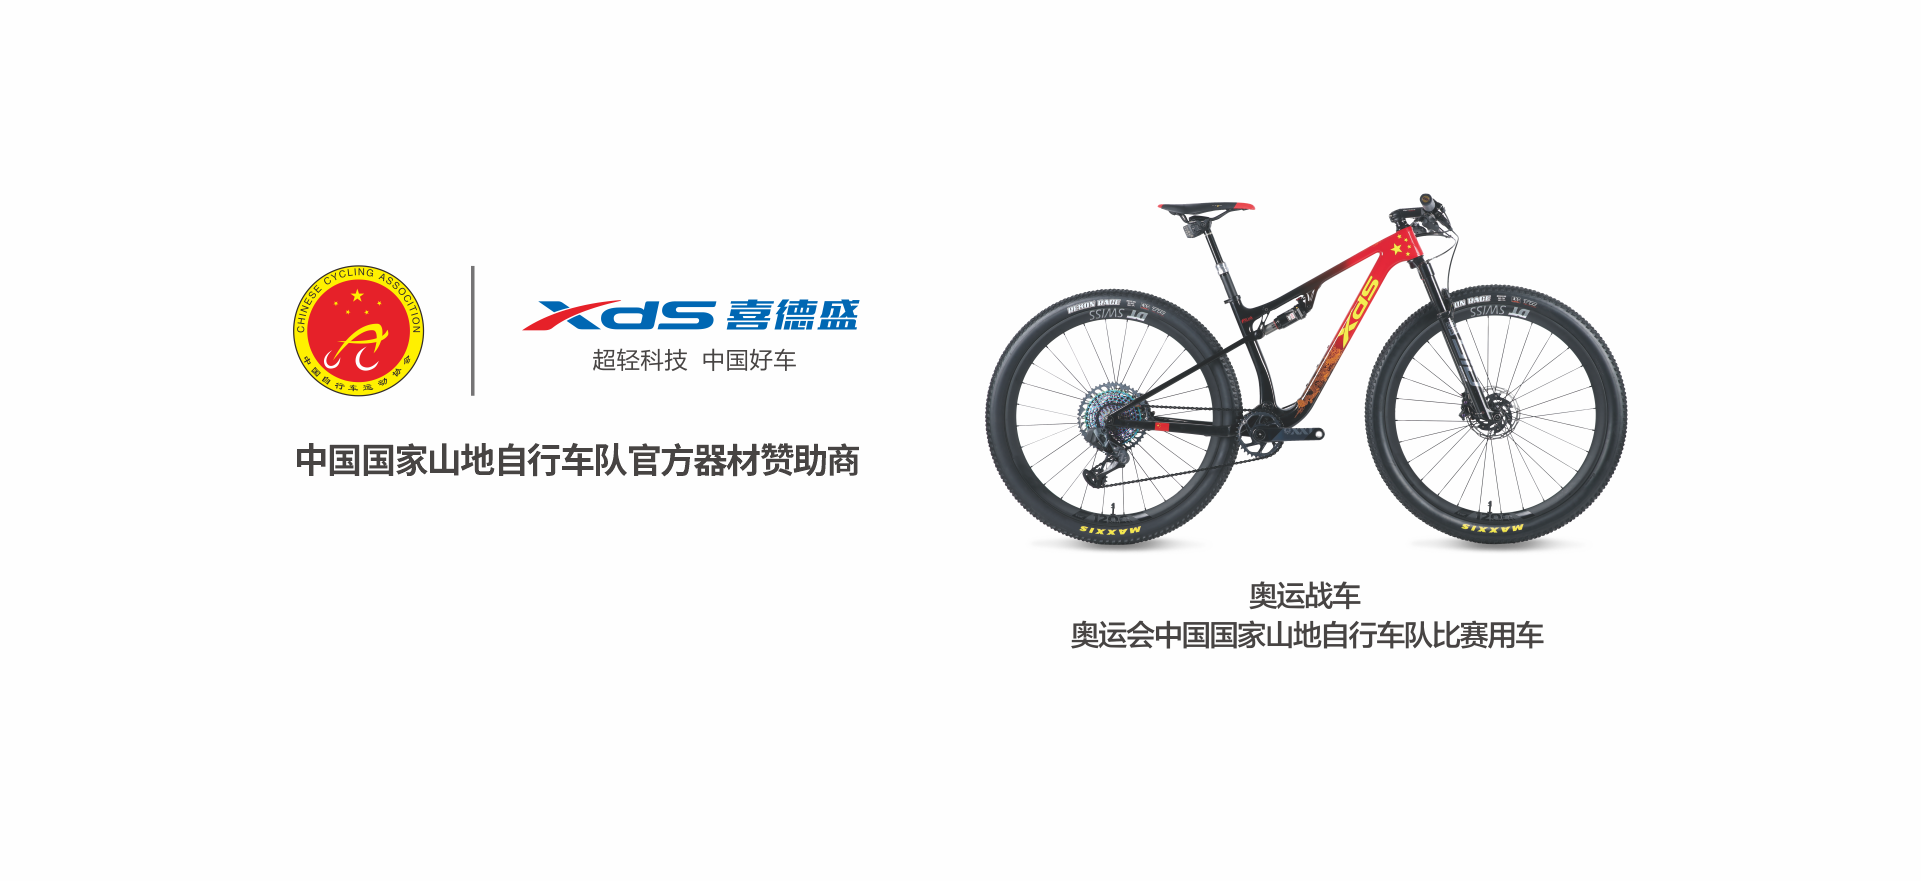 中国国家山地自行车队官方器材赞助商